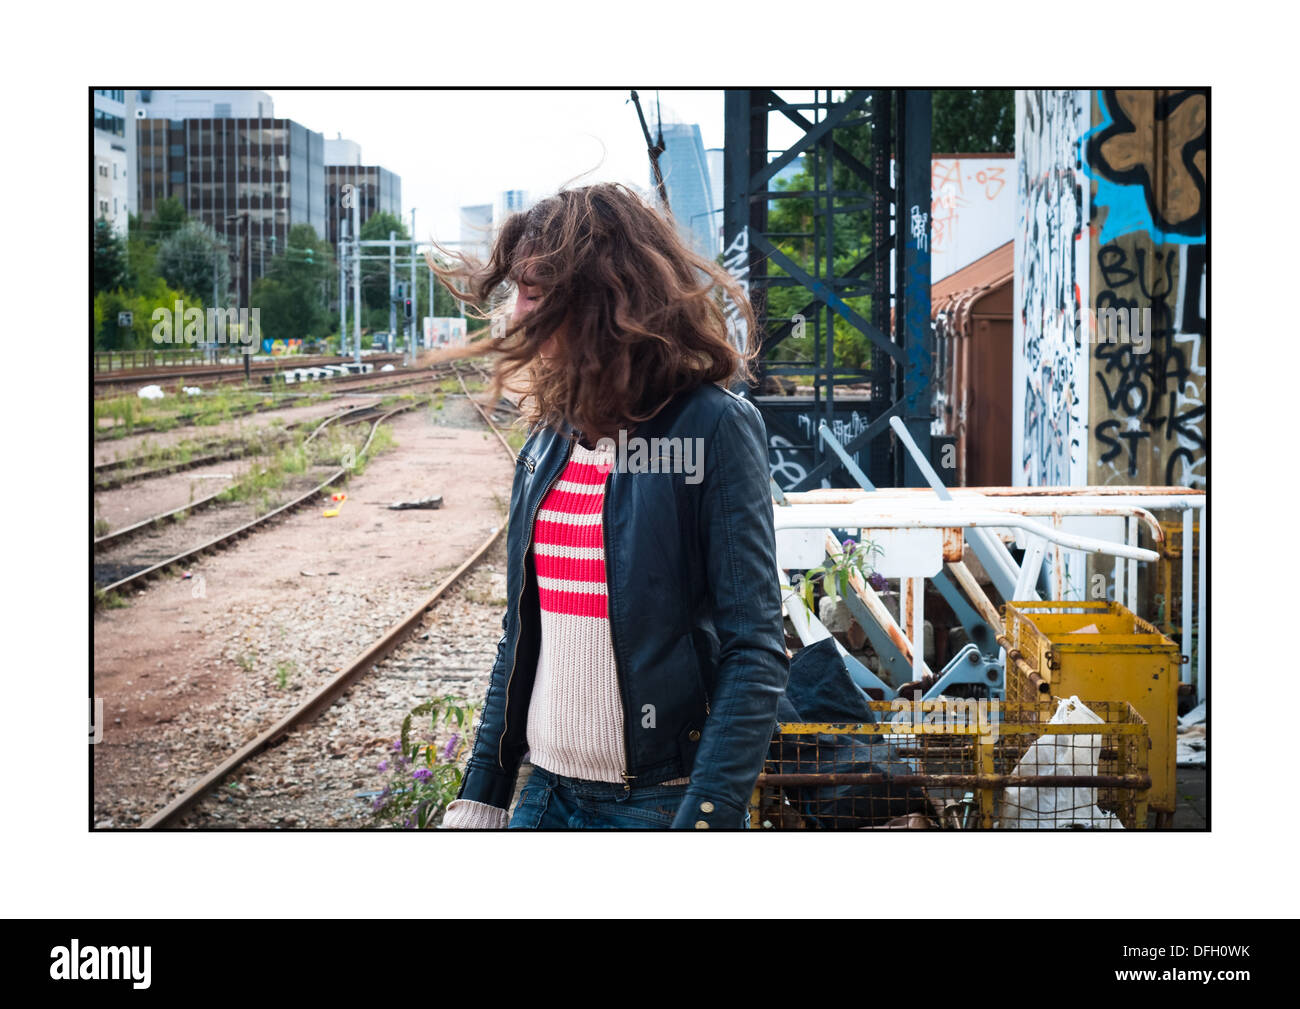 Giovane donna nei pressi di un convoglio ferroviario, su una vecchia stazione ferroviaria SNCF, Courbevoie, Francia. Foto Stock